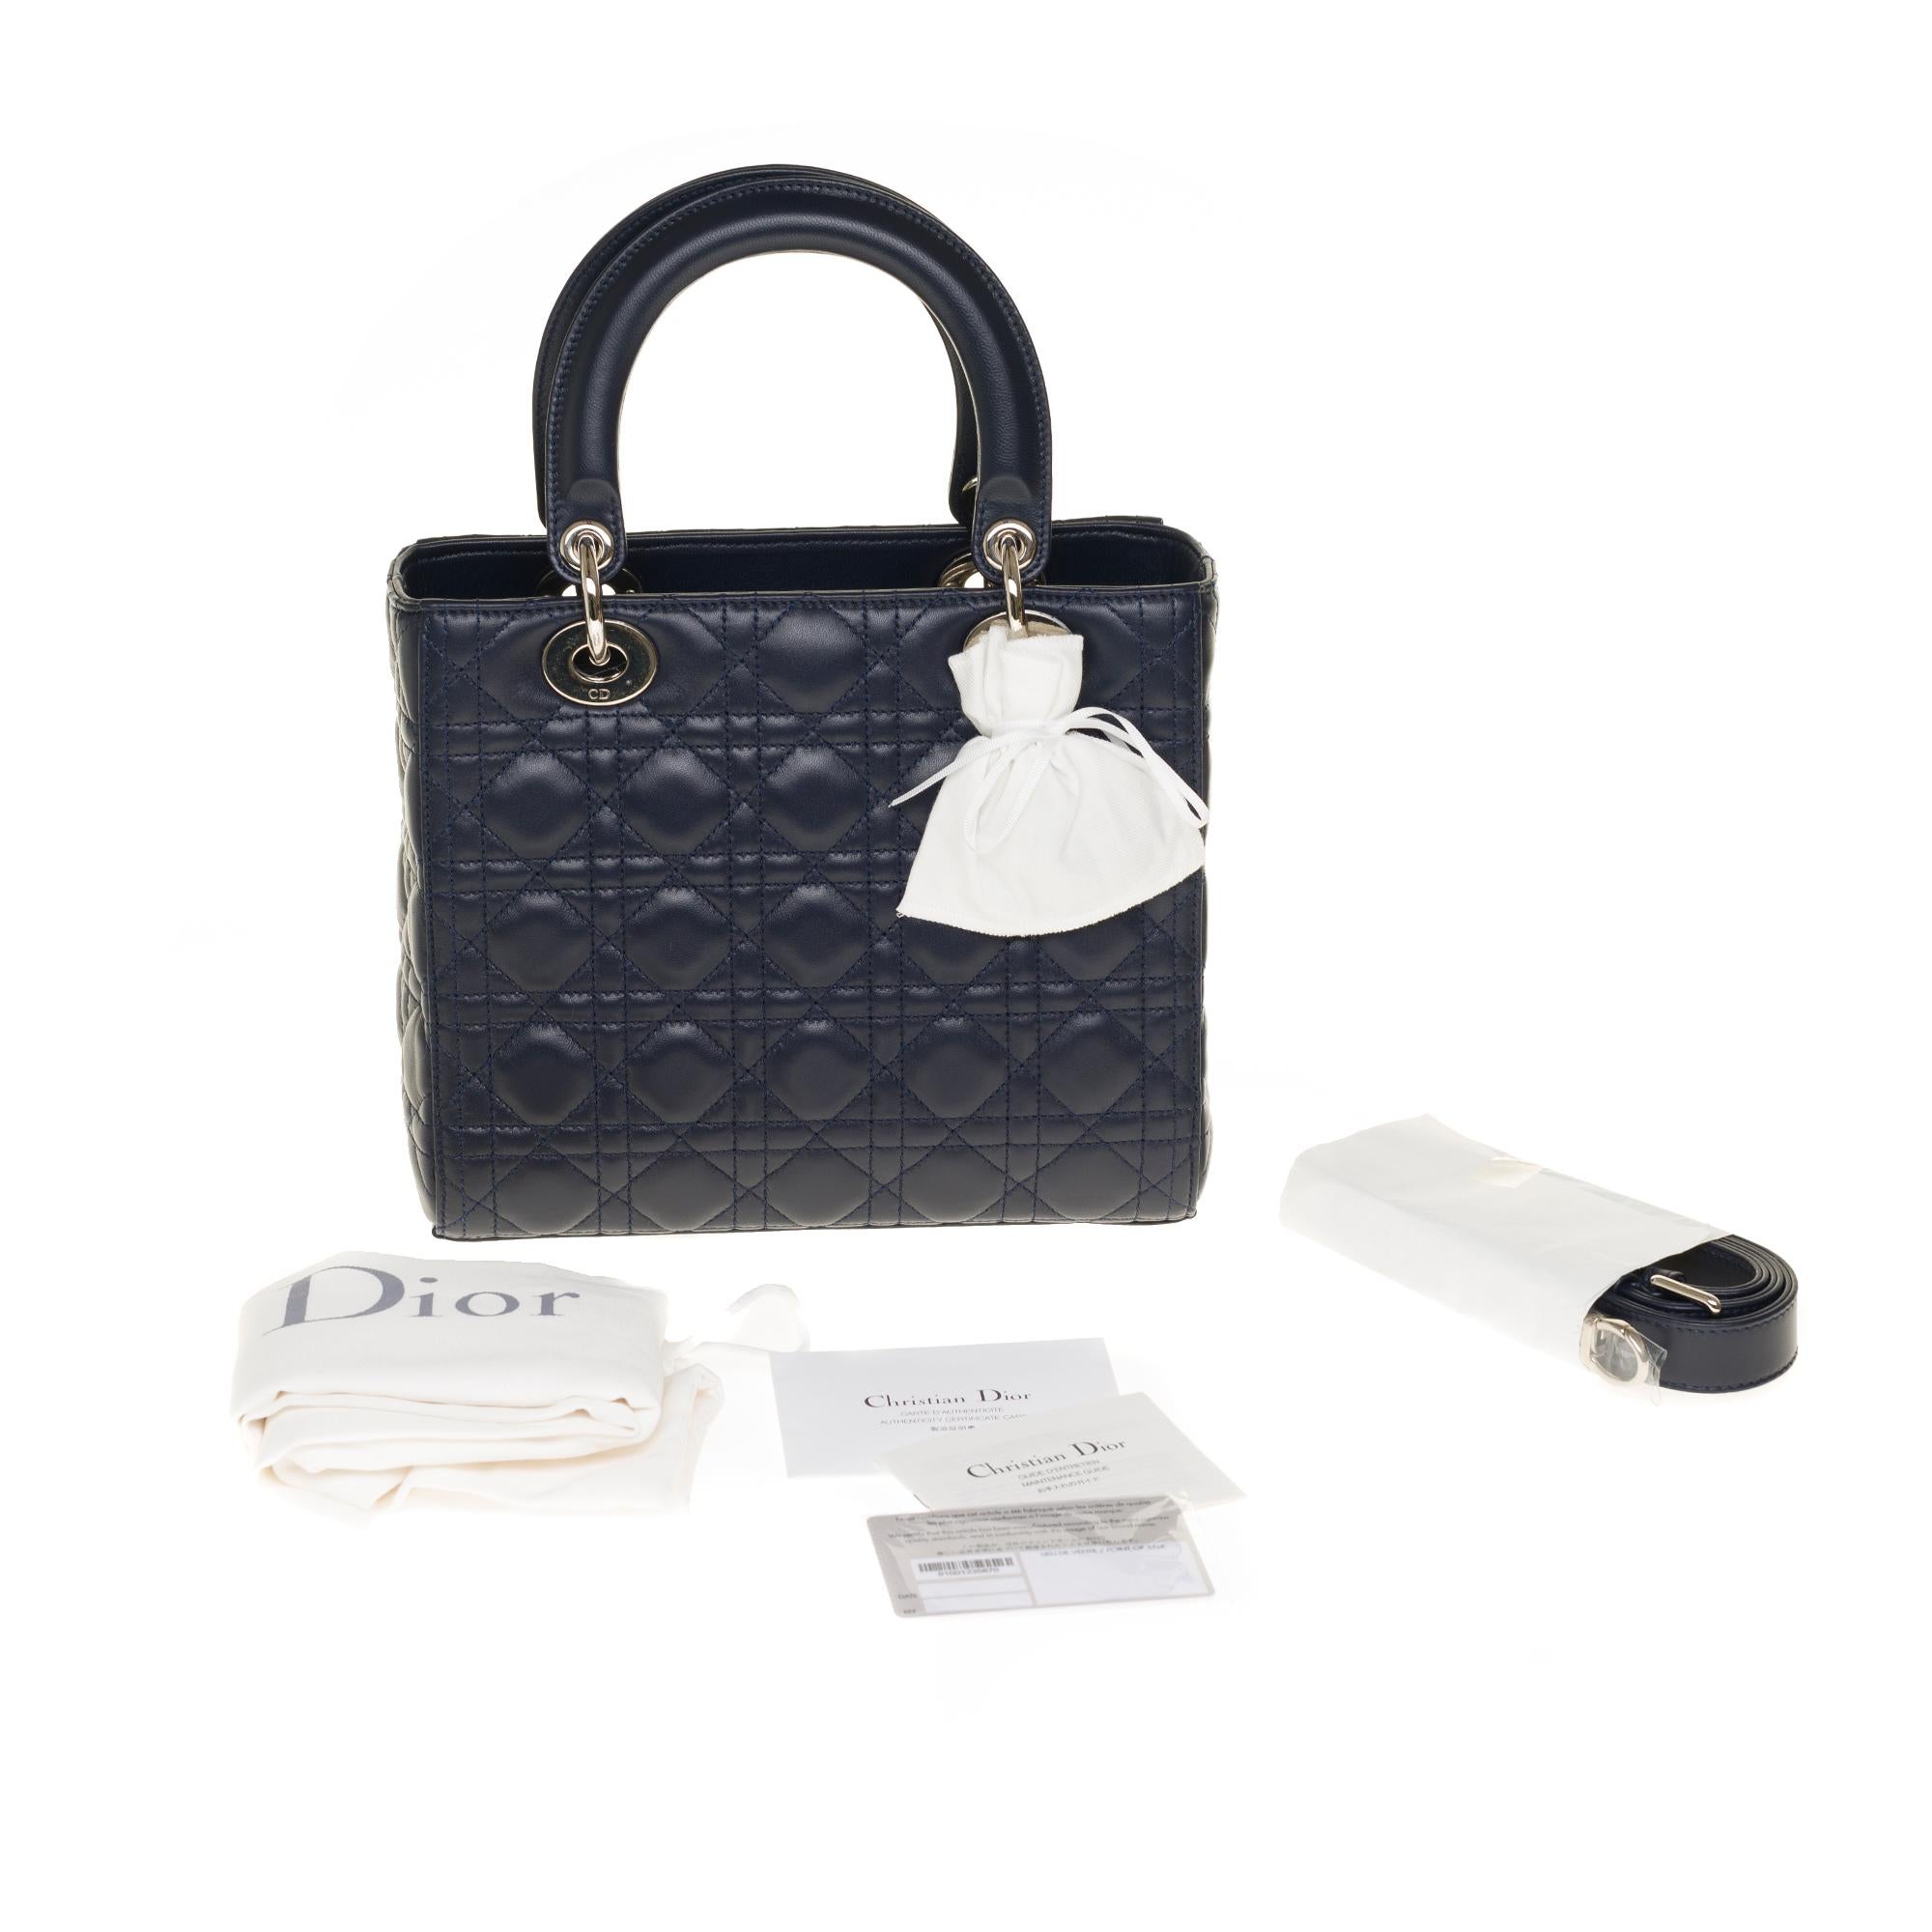  Christian Dior Lady Dior Medium size handbag in blue navy cannage leather, PHW 6